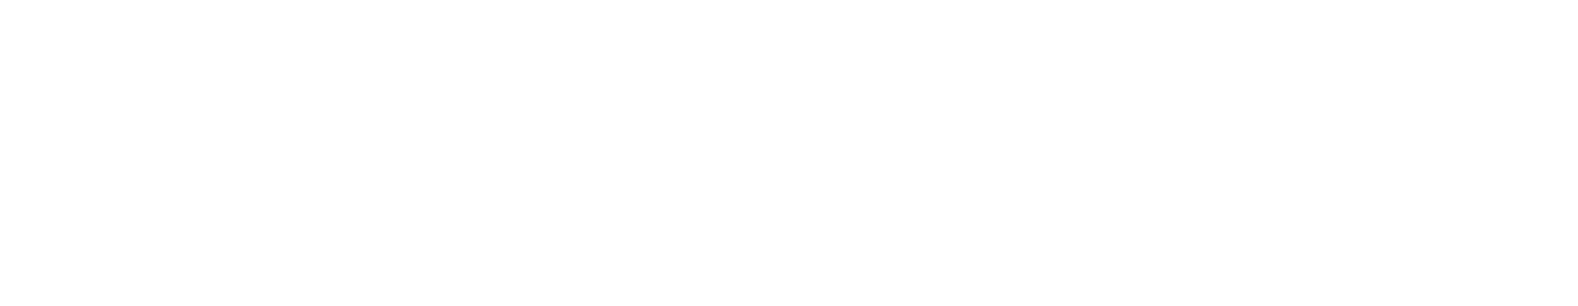 FactSet logo large for dark backgrounds (transparent PNG)